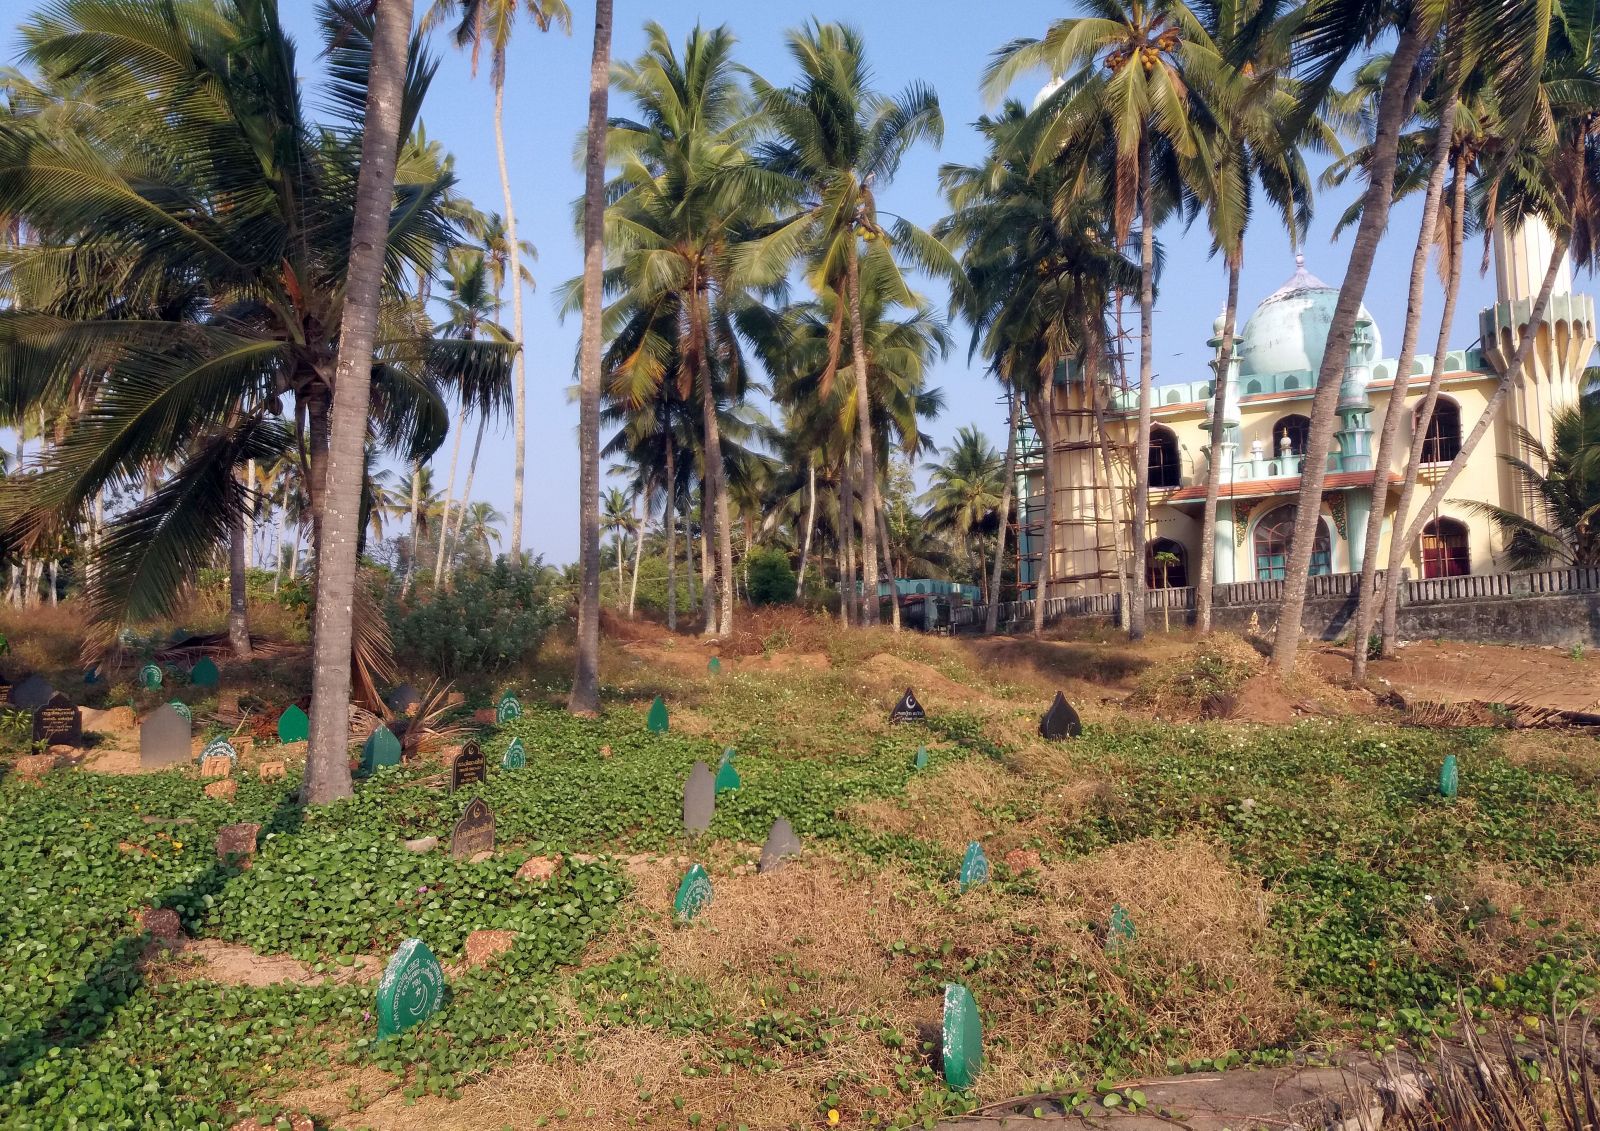 Мусульманское кладбище возле мечети в Варкале, Индия. Фото: Людмила Крылова / Ракурс